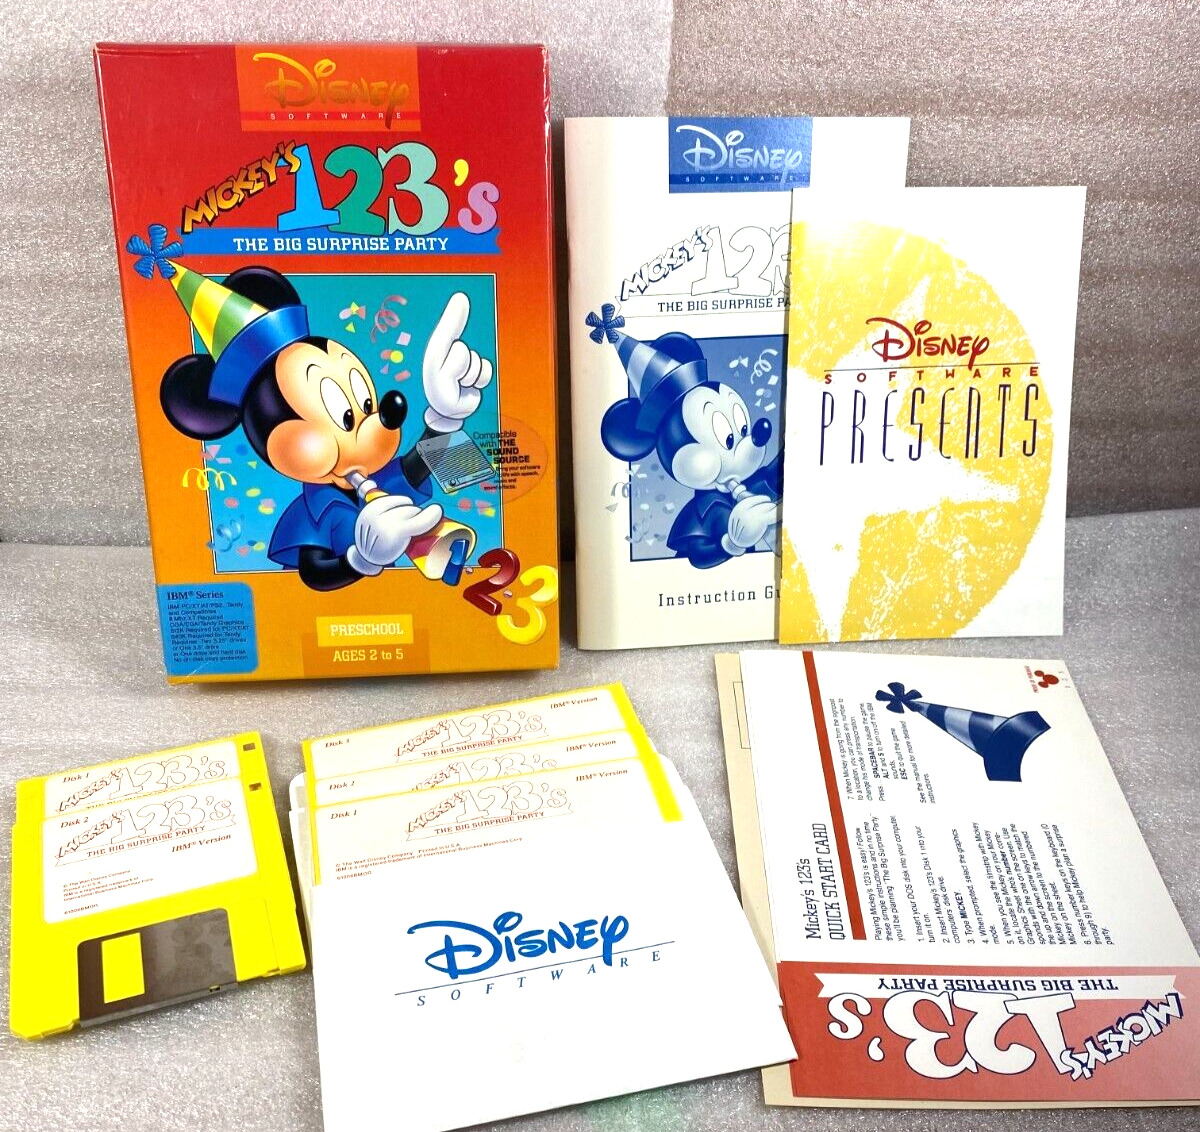 Vintage Mickey's 123's Sound Source IBM PC DOS XT EGA CGA GAME Floppy